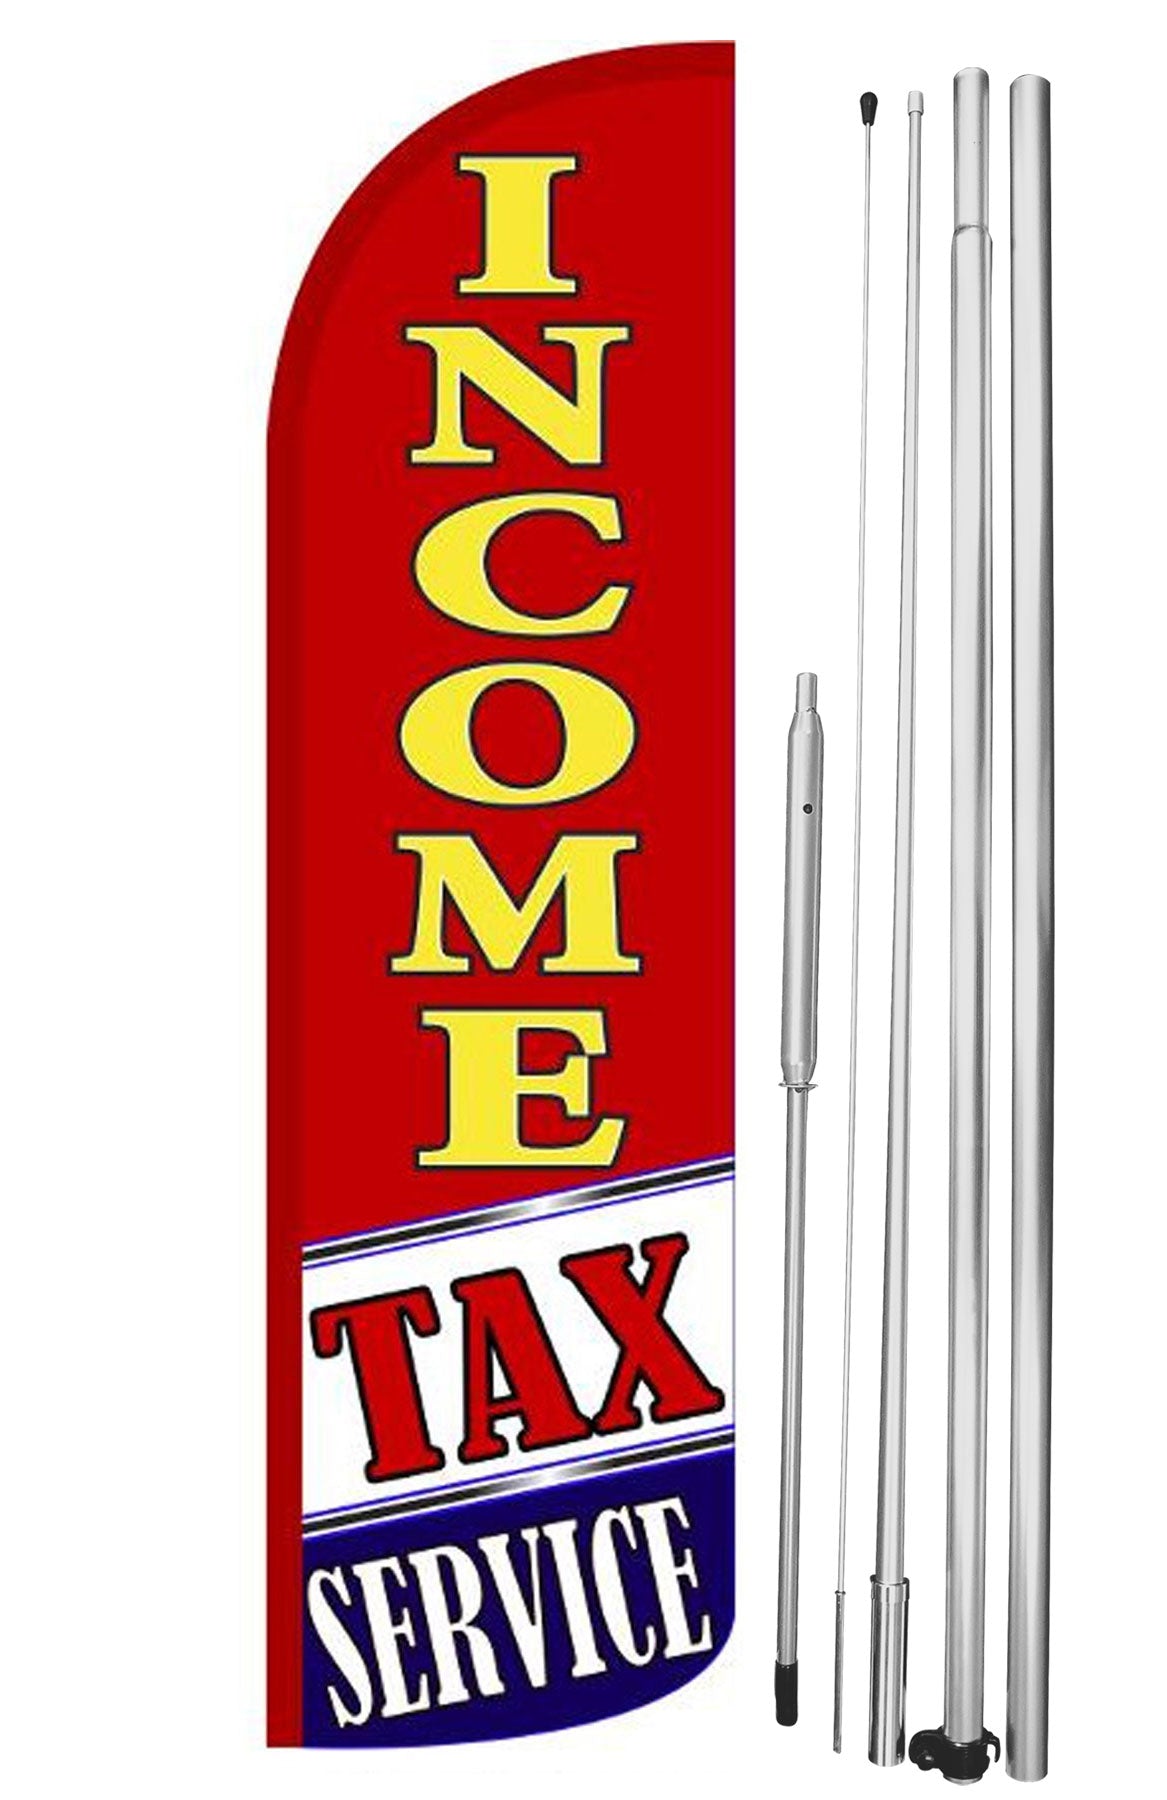 Income Tax Service